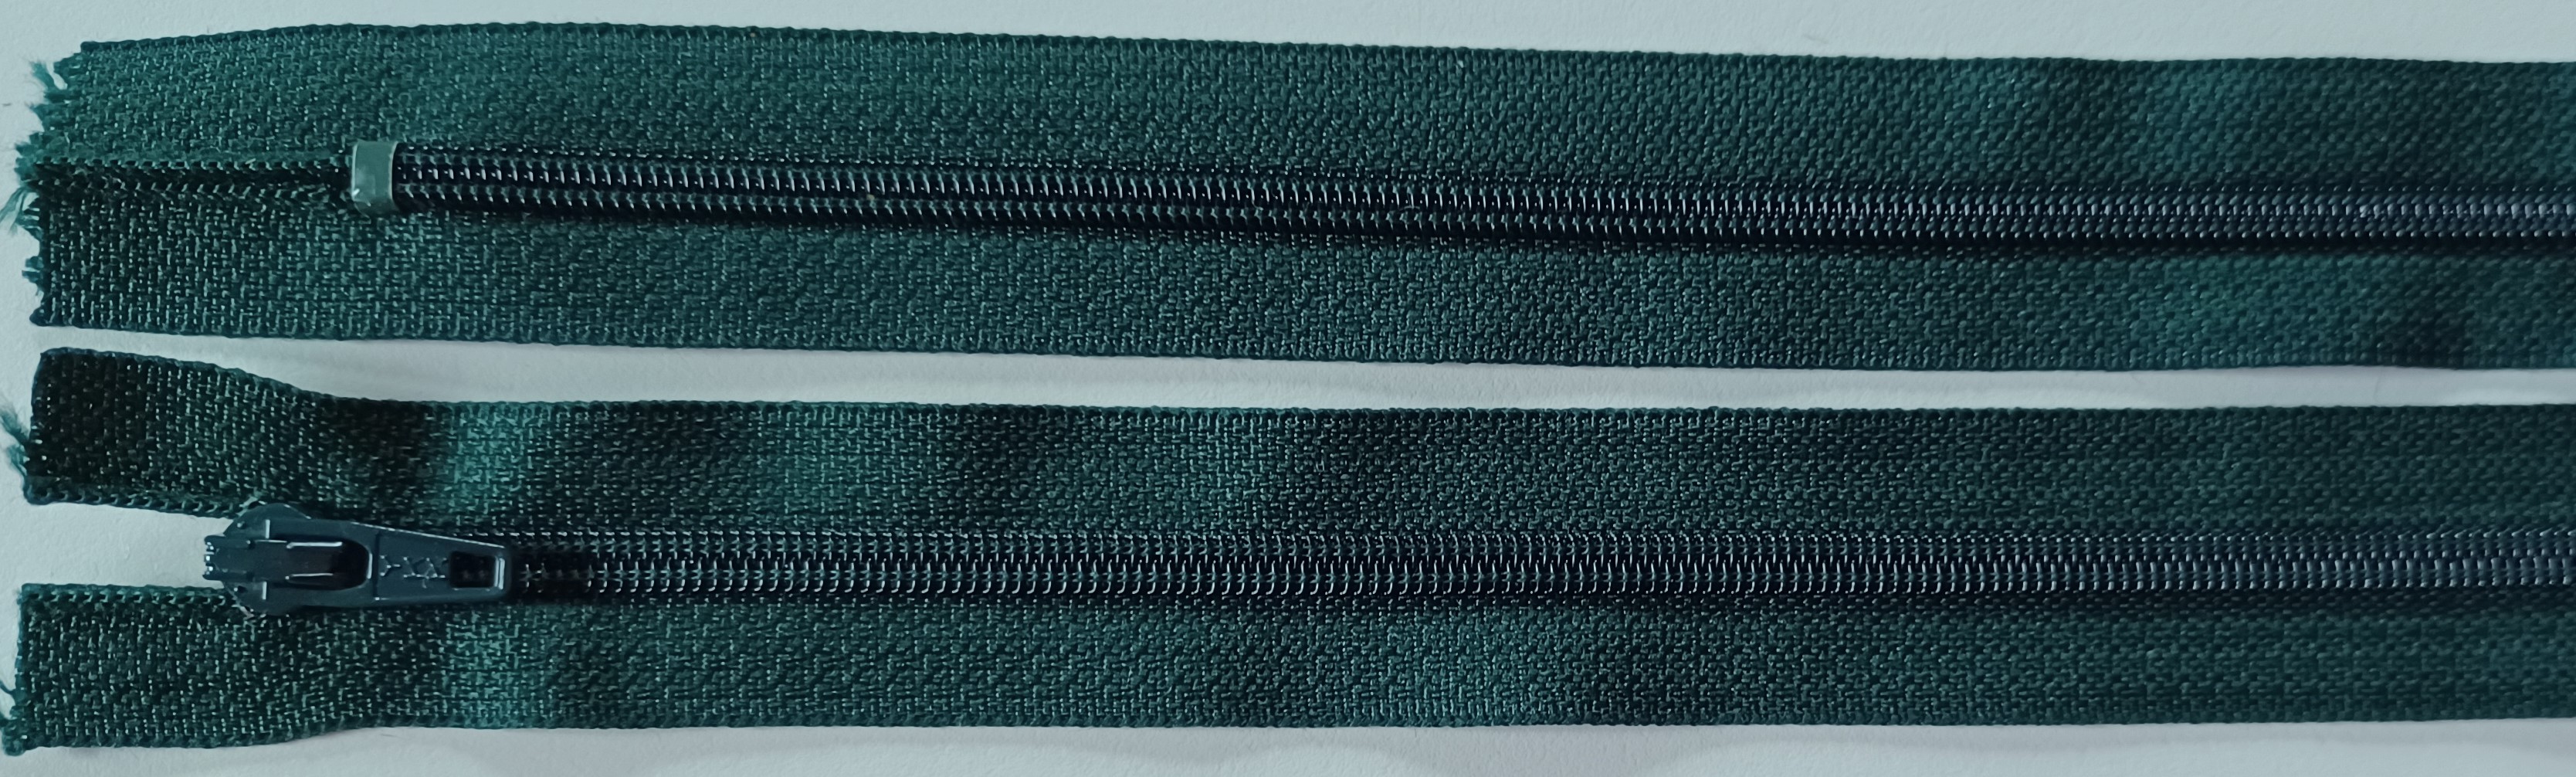 YKK Fir Green 7" Zipper